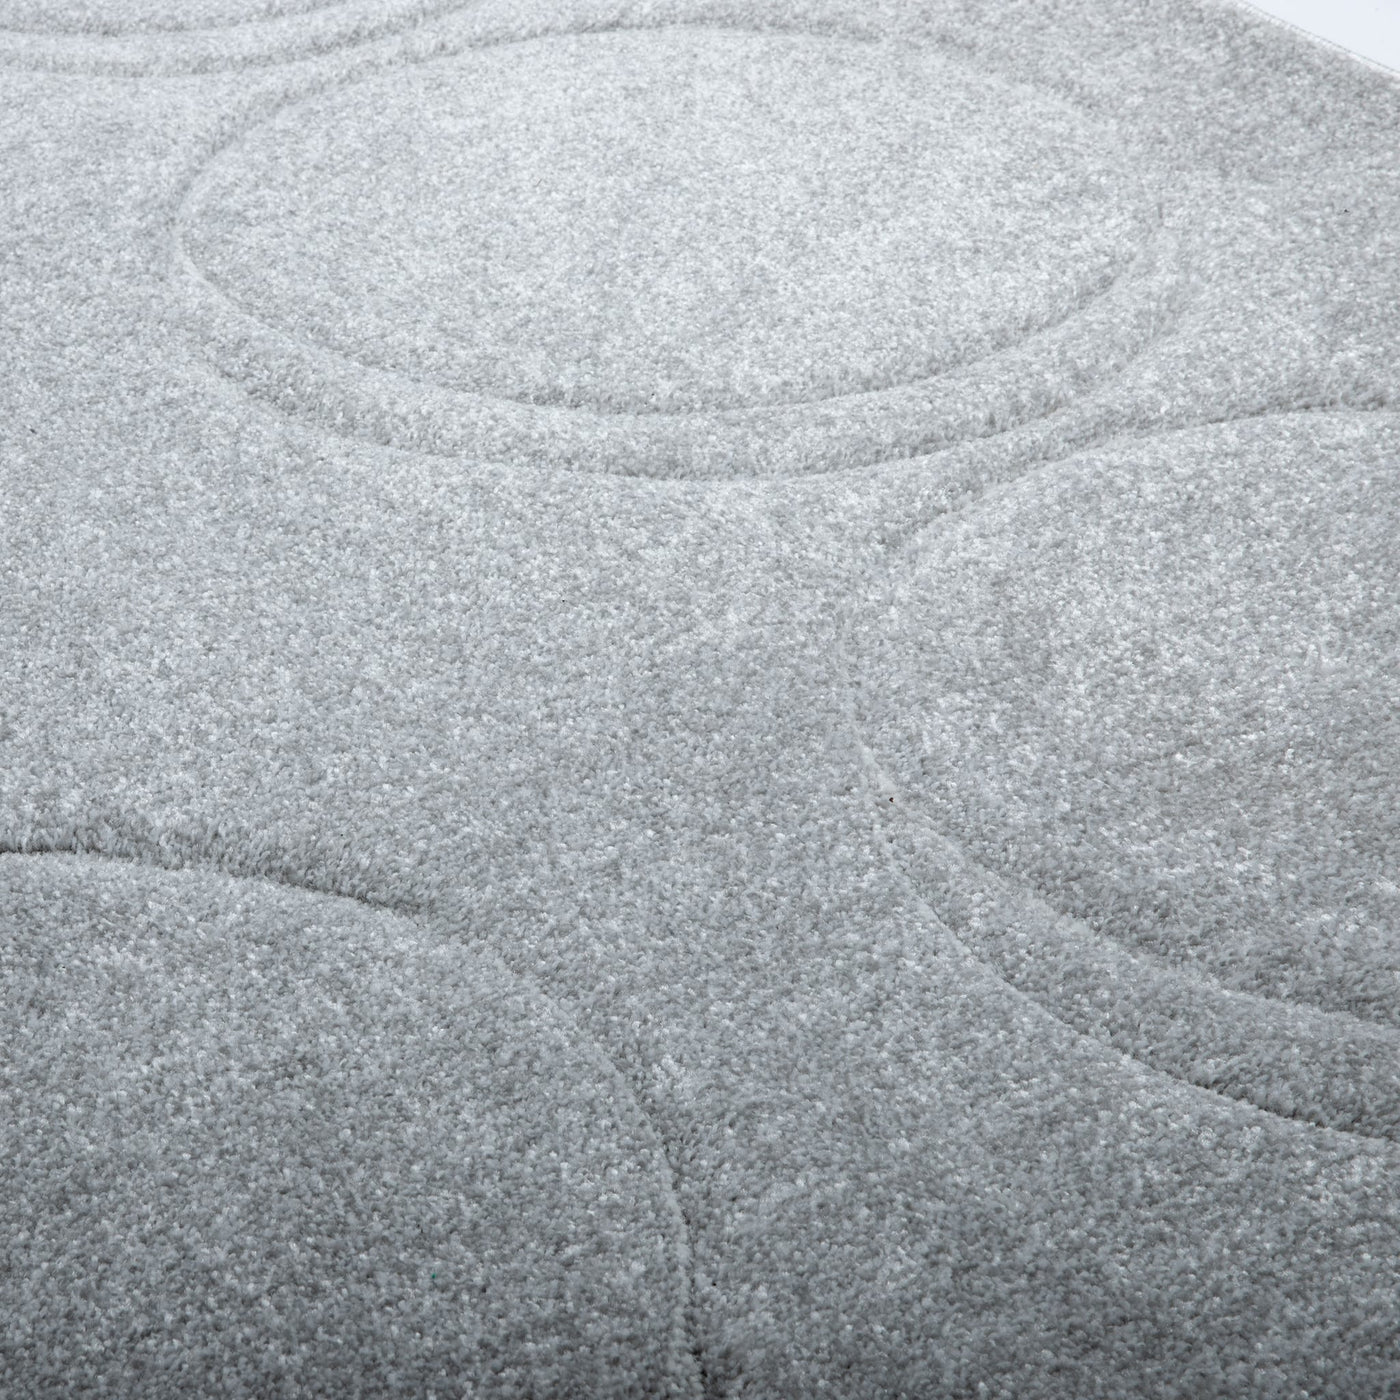 Découvrez le tapis Dot de Fatboy : motifs sphériques pelucheux et savoir-faire distinctif pour un design captivant et une expérience tactile incomparable.